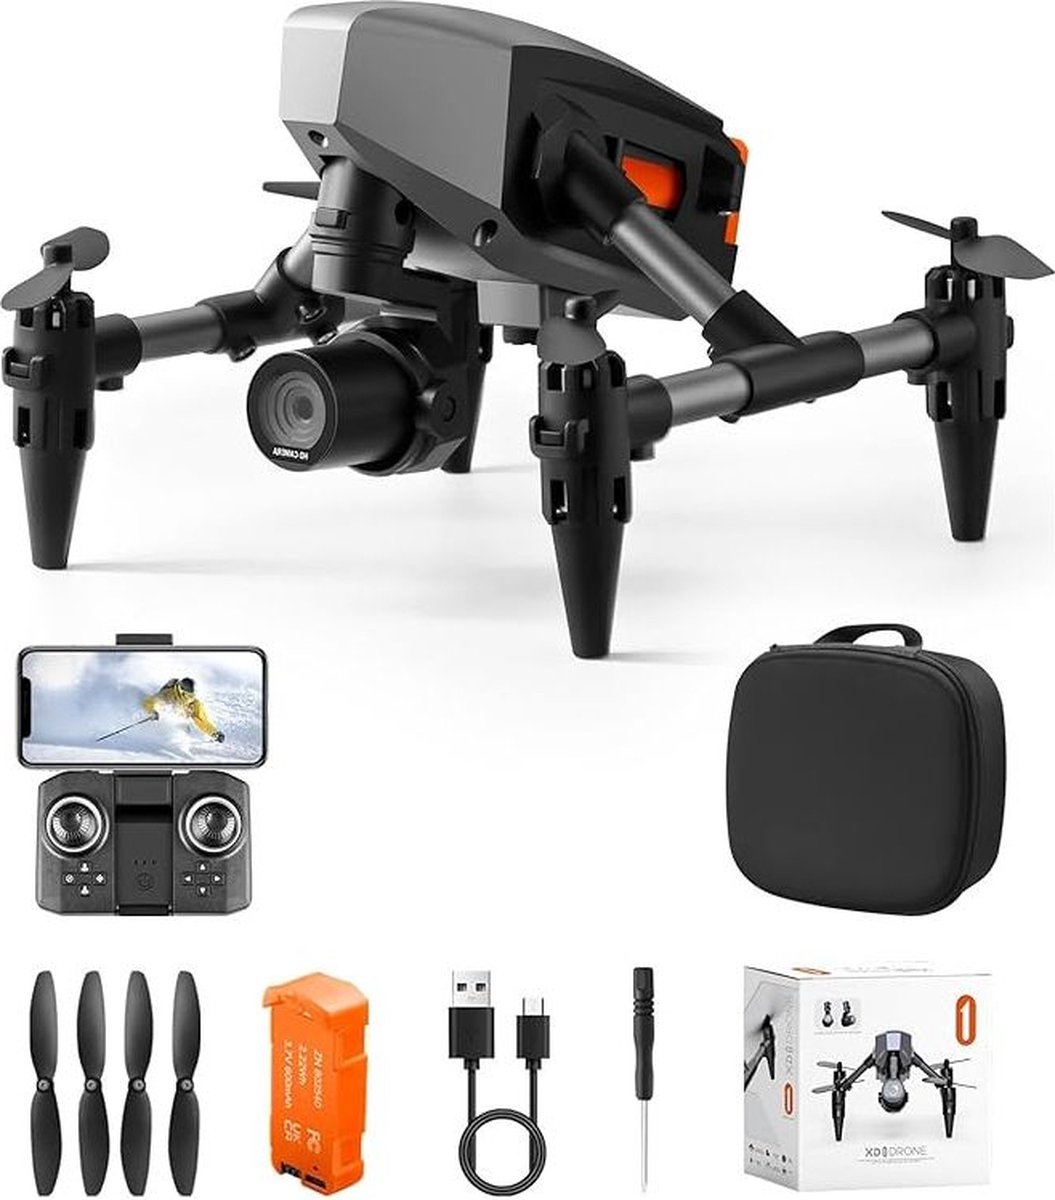 Ultra-Compacte - Mini Drone met Hoge Snelheid, Geavanceerde Functies & Verhoogde Fotografie Mogelijkheden - Inclusief Complete Vliegkit